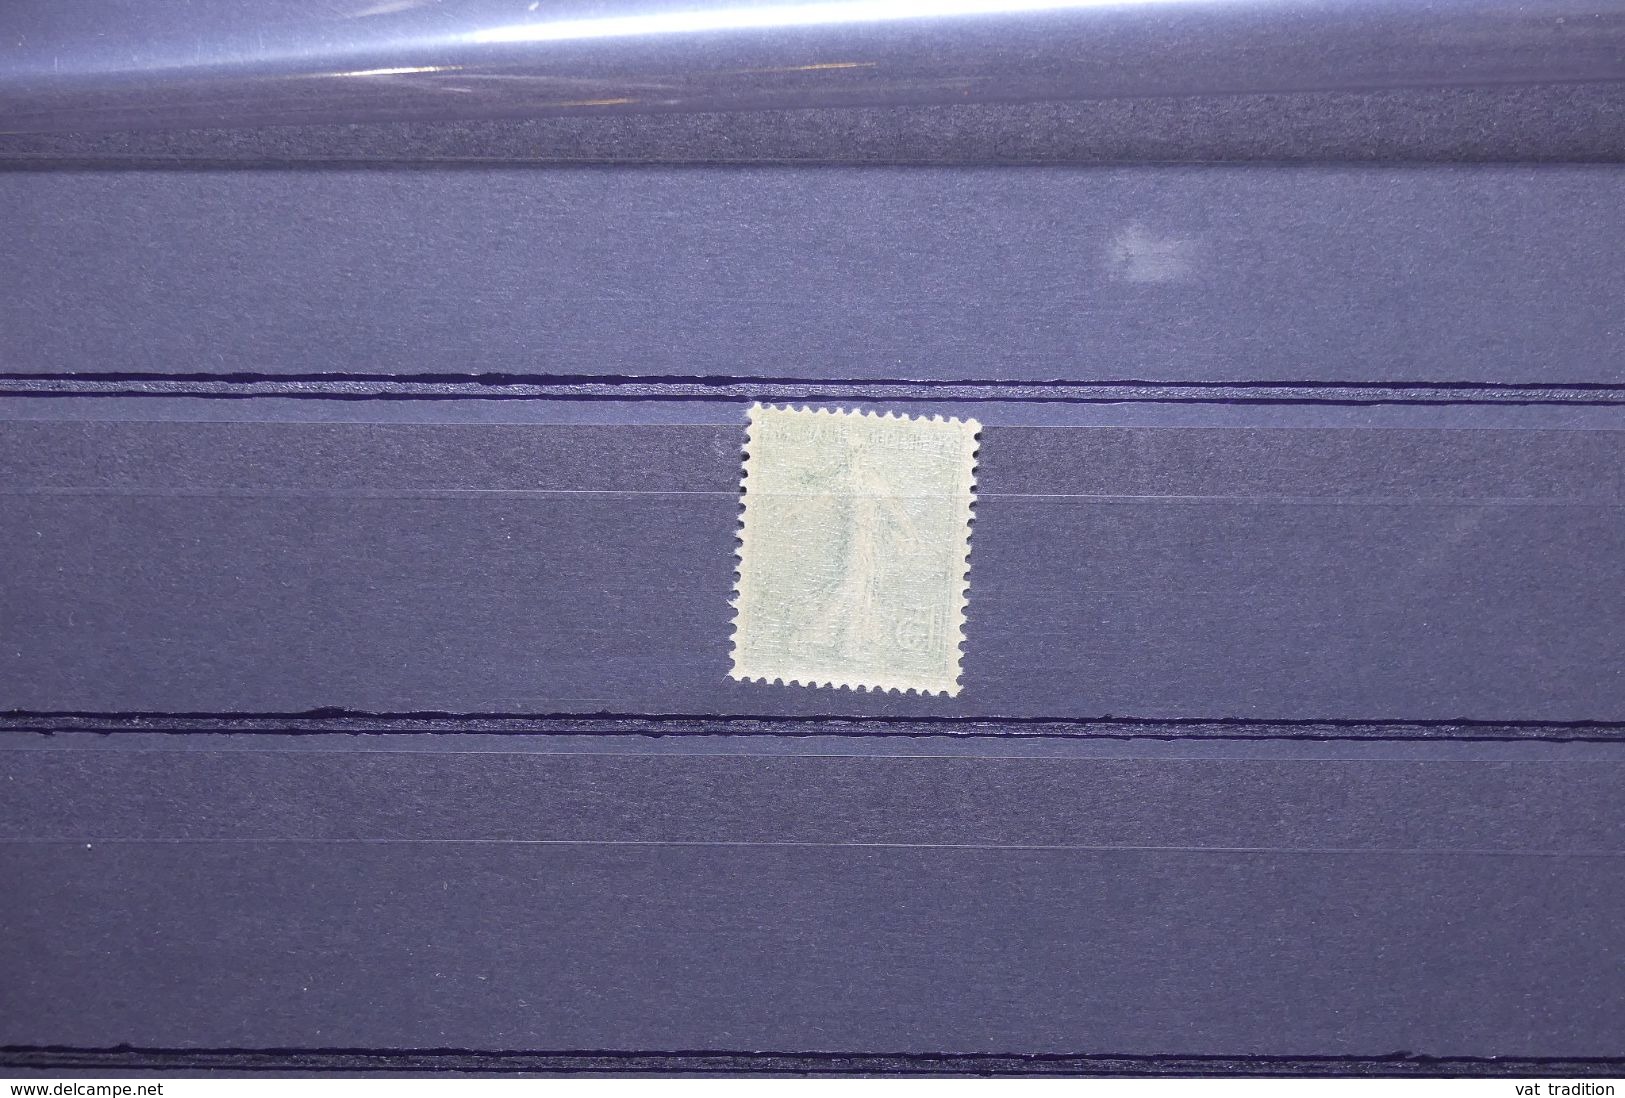 FRANCE - Variété - N° Yvert 130 15ct Semeuse - Double Recto Verso - L 65166 - Unused Stamps